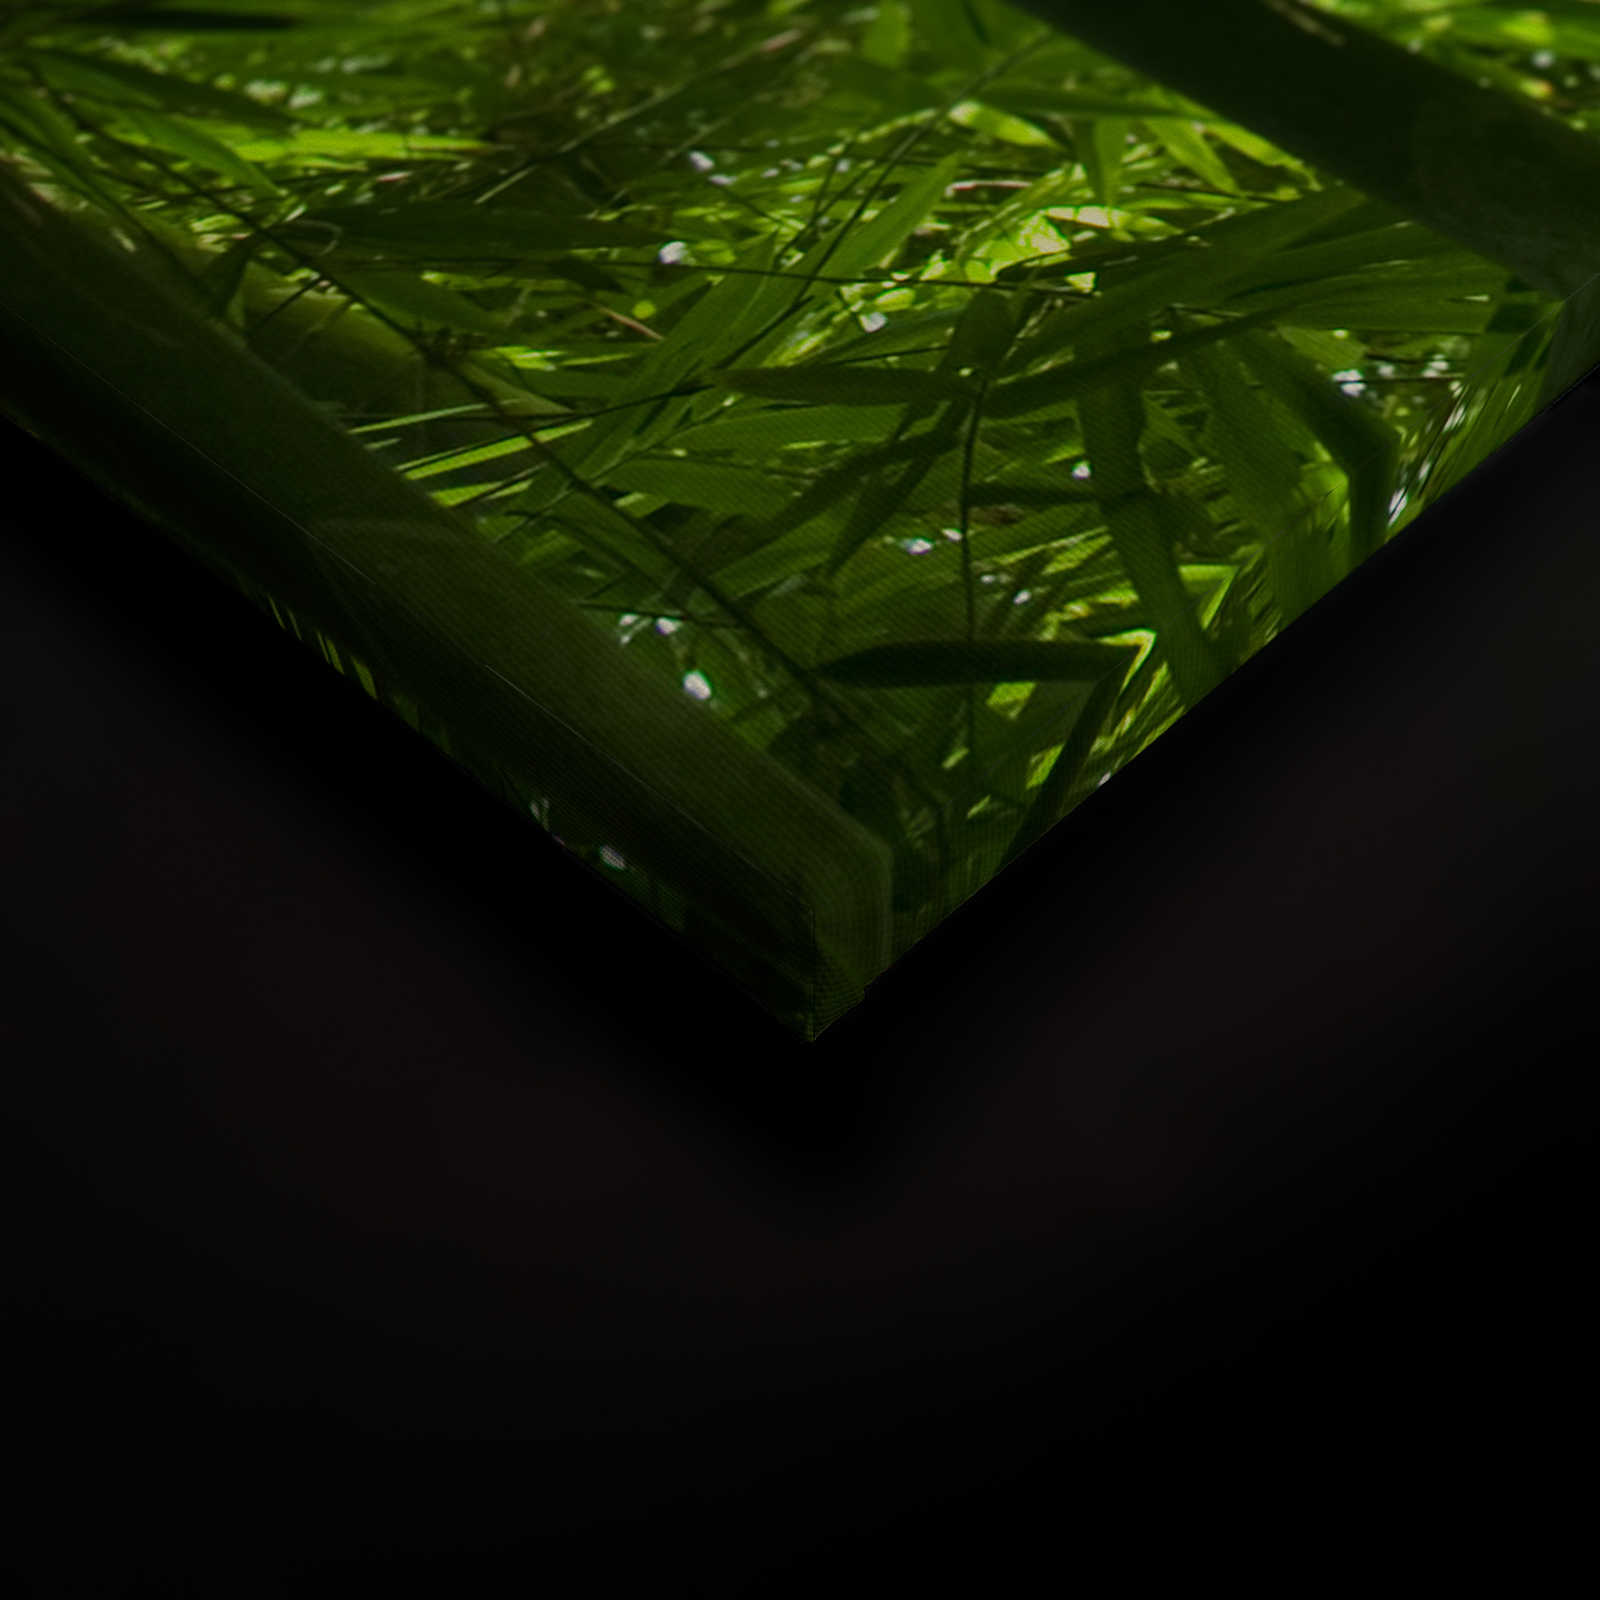             Toile Bambou et feuilles - 1,20 m x 0,80 m
        